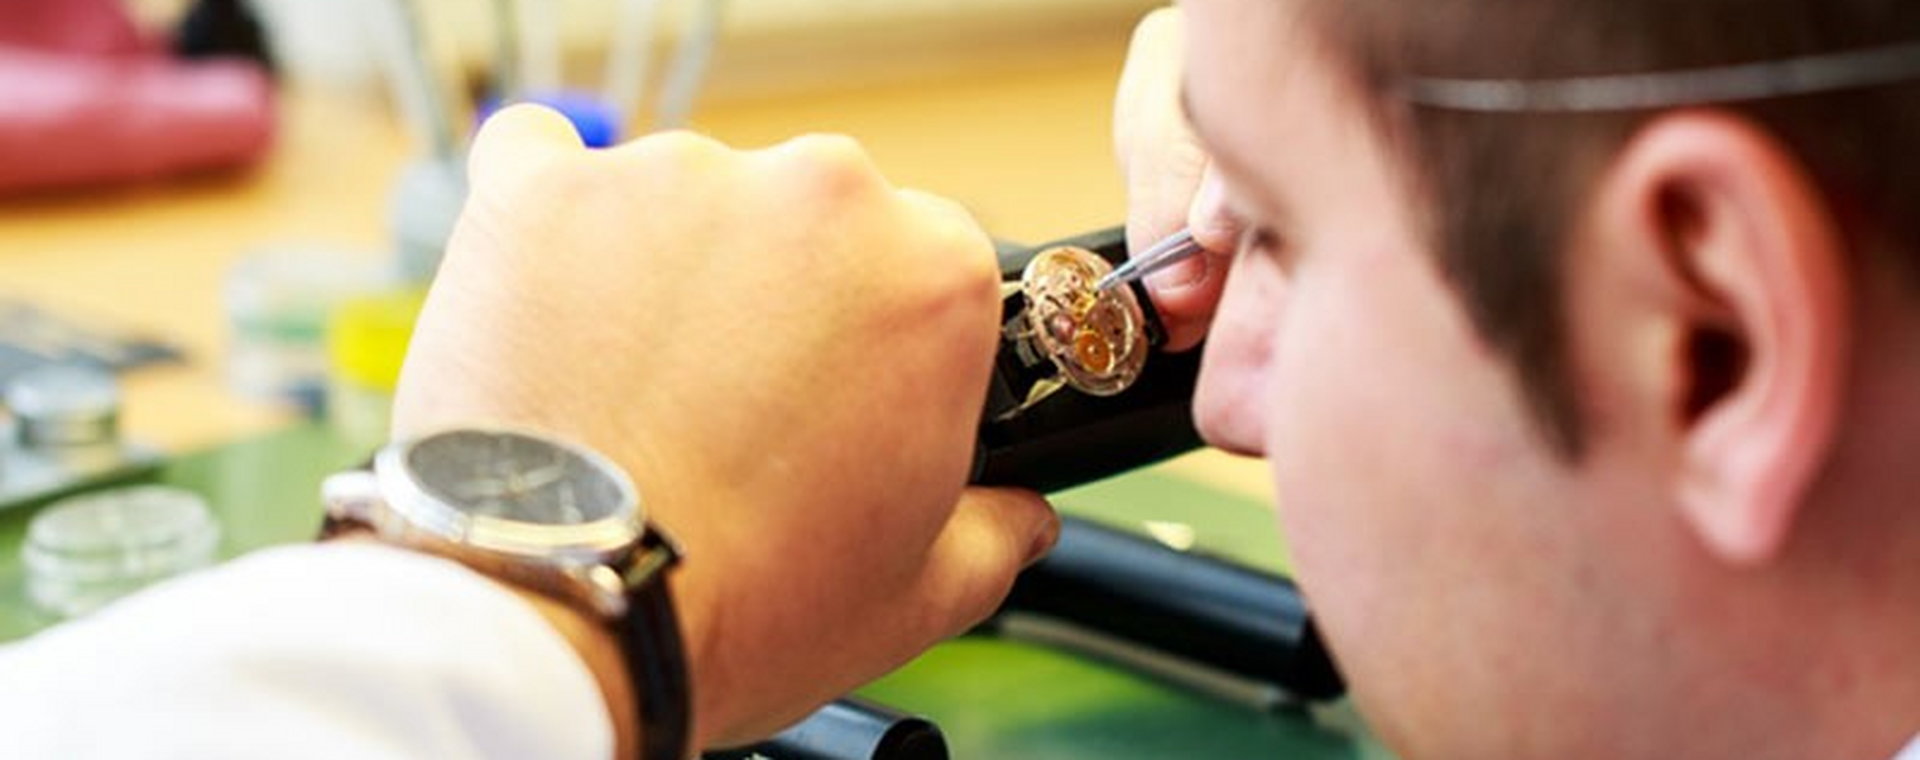 Rodzinna manufaktura w Szwajcarii nie zrywa z tradycją i pokazuje, jak może wyglądać współczesny zegarek